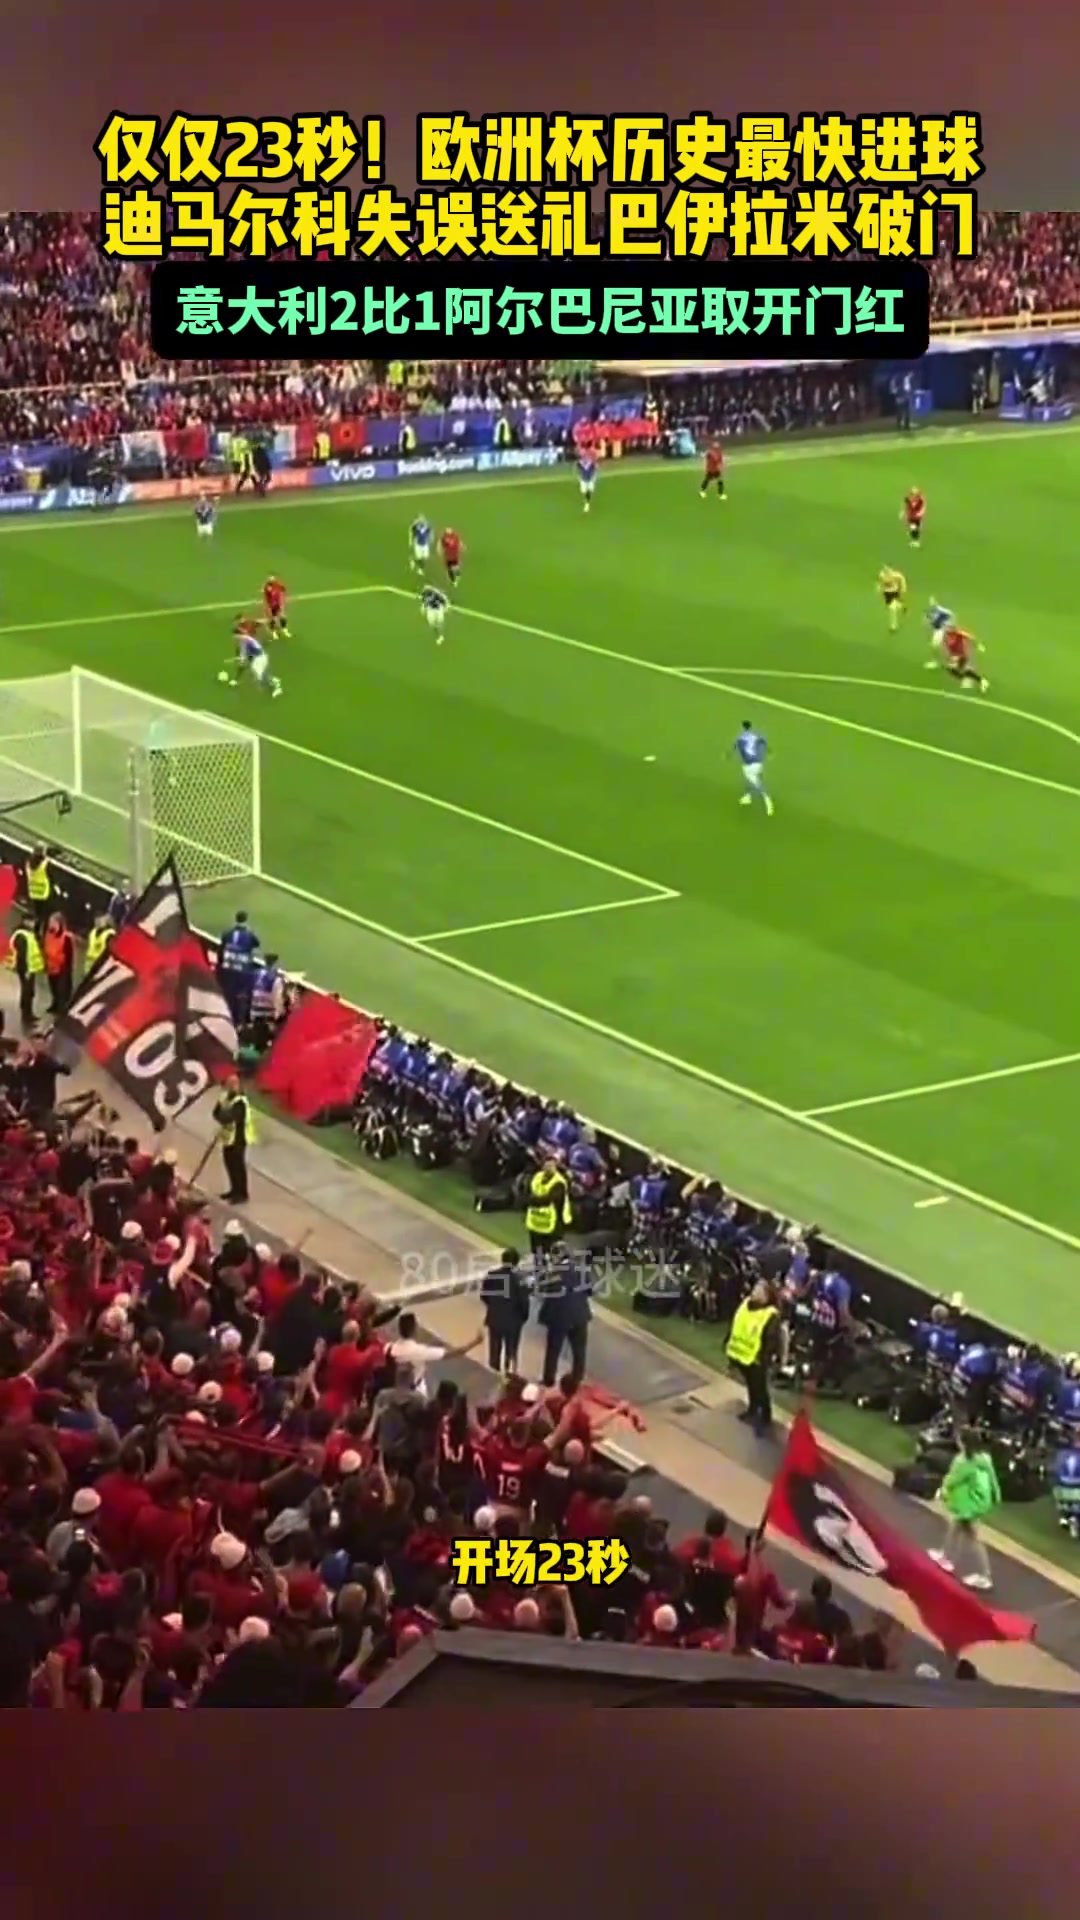 23秒!阿尔巴尼亚打入欧洲杯历史最快进球,球迷们疯狂了